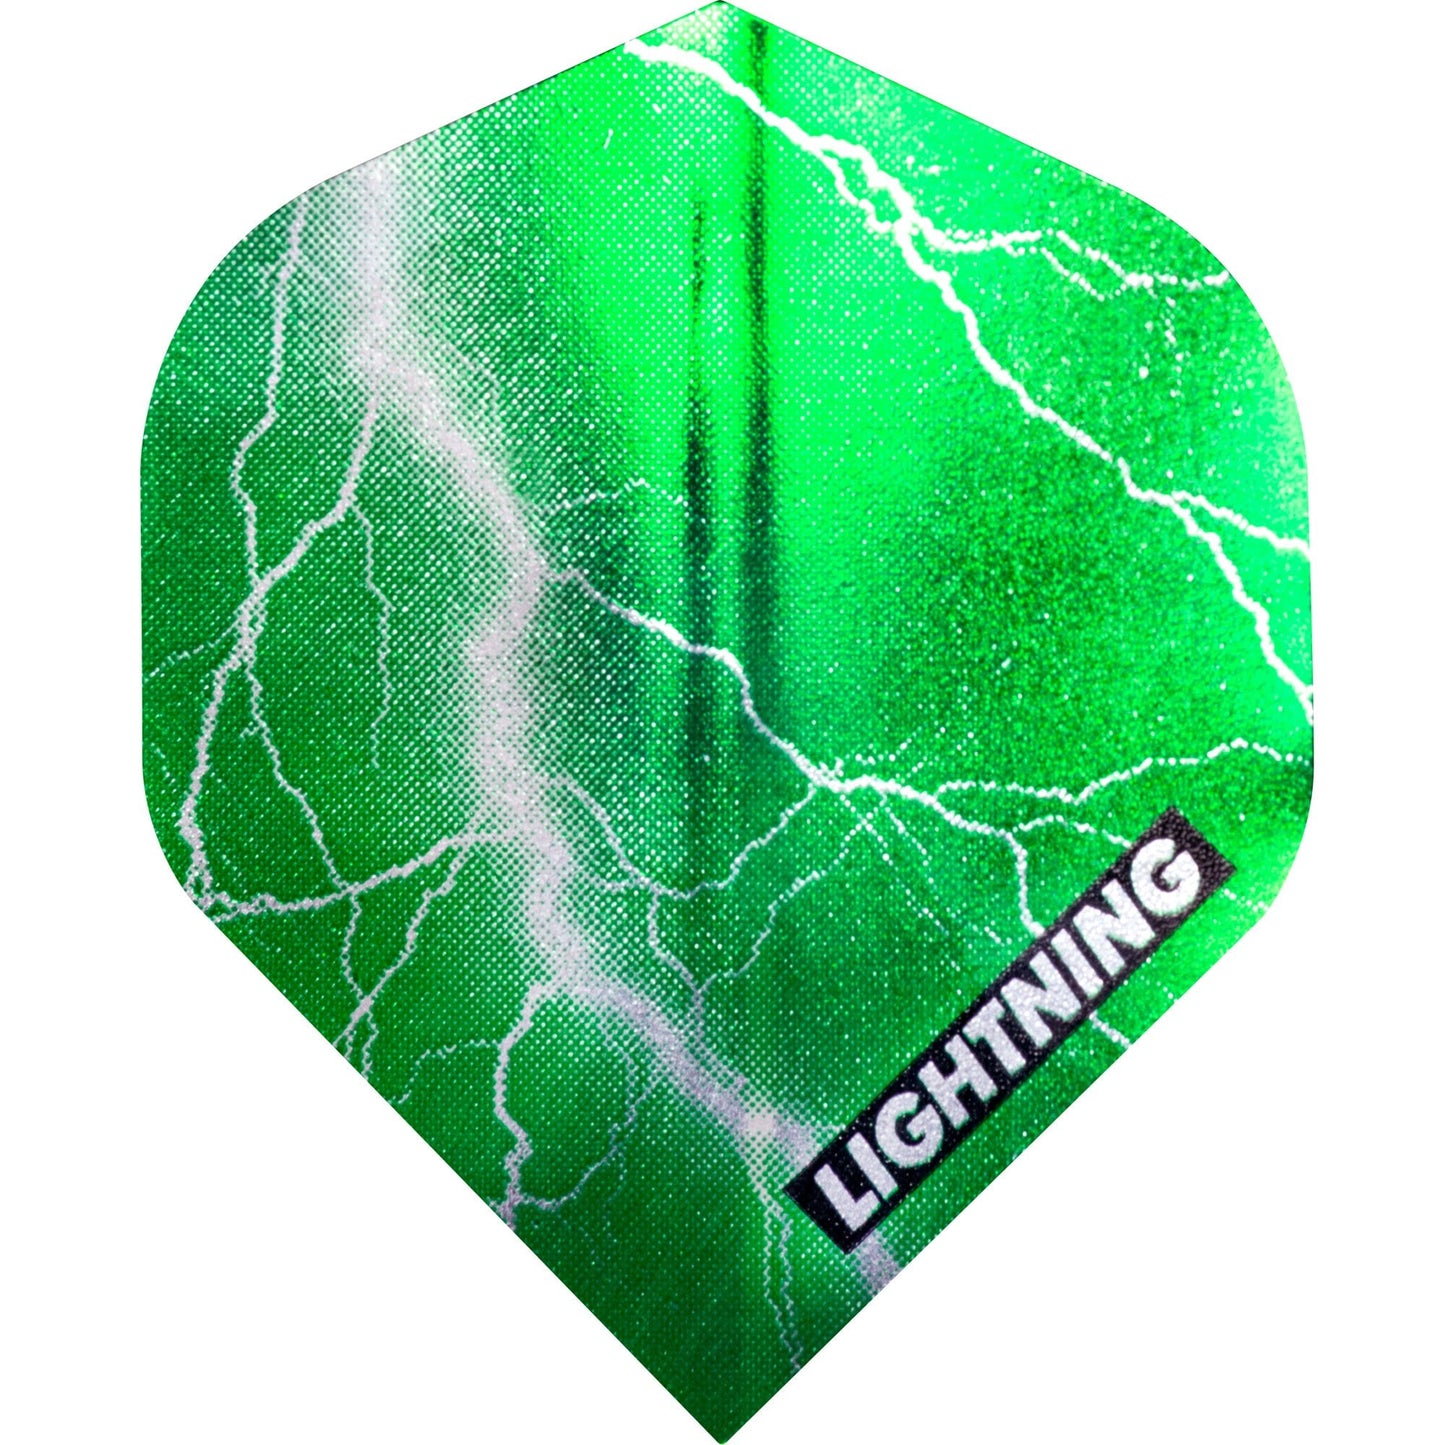 McKicks Lightning Dart Flights - Metallic - Std Green